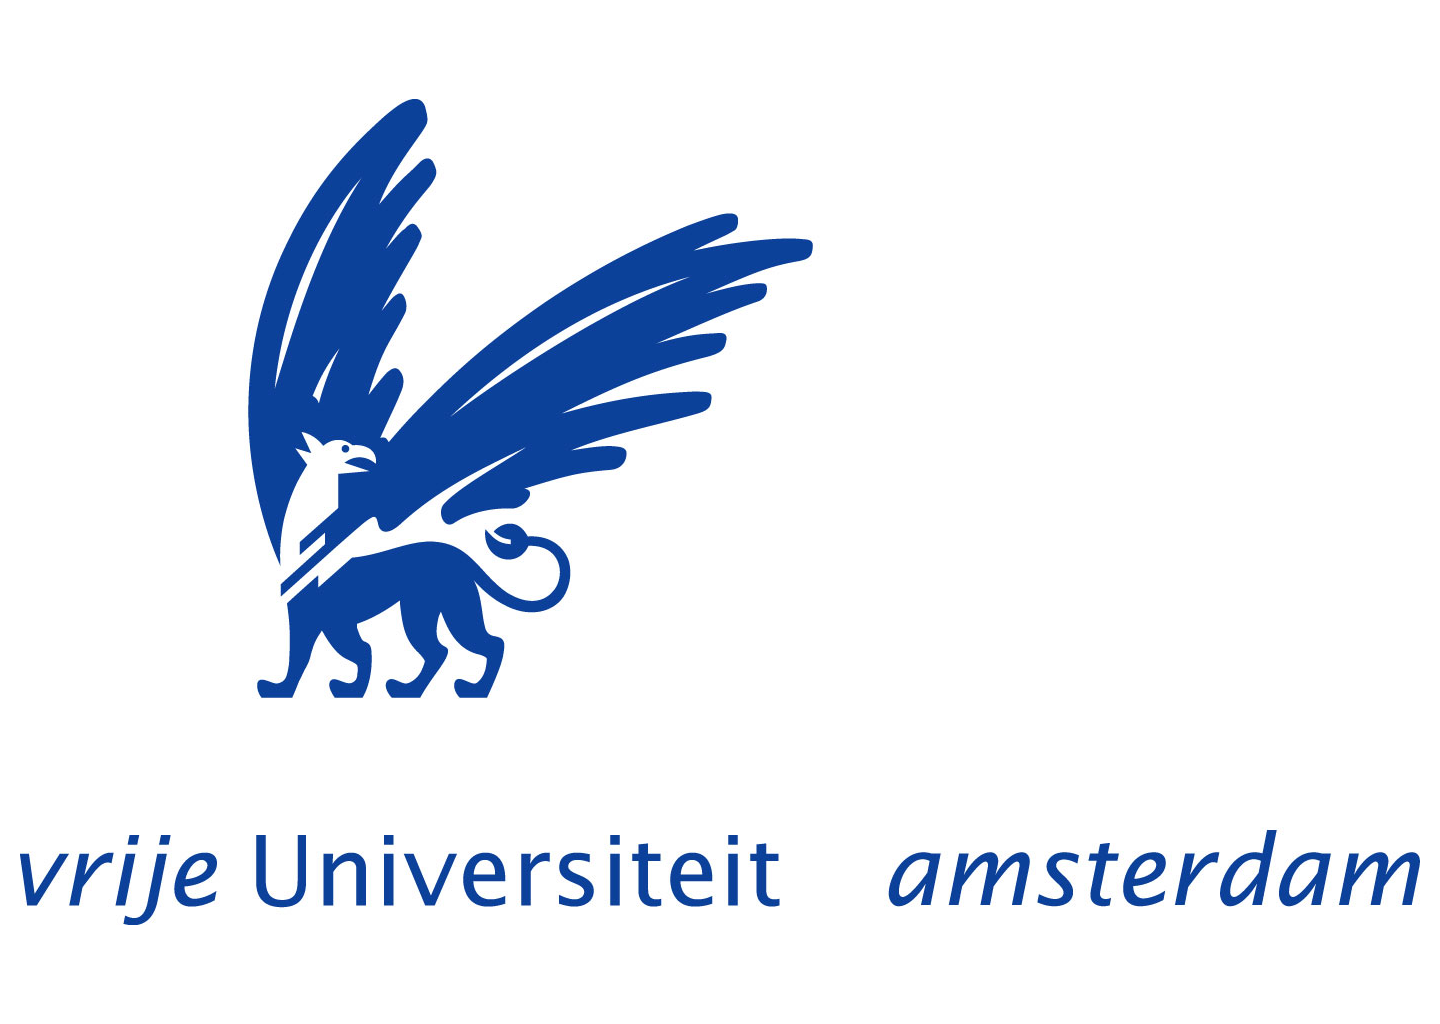 vrije universiteit amsterdam logo 07